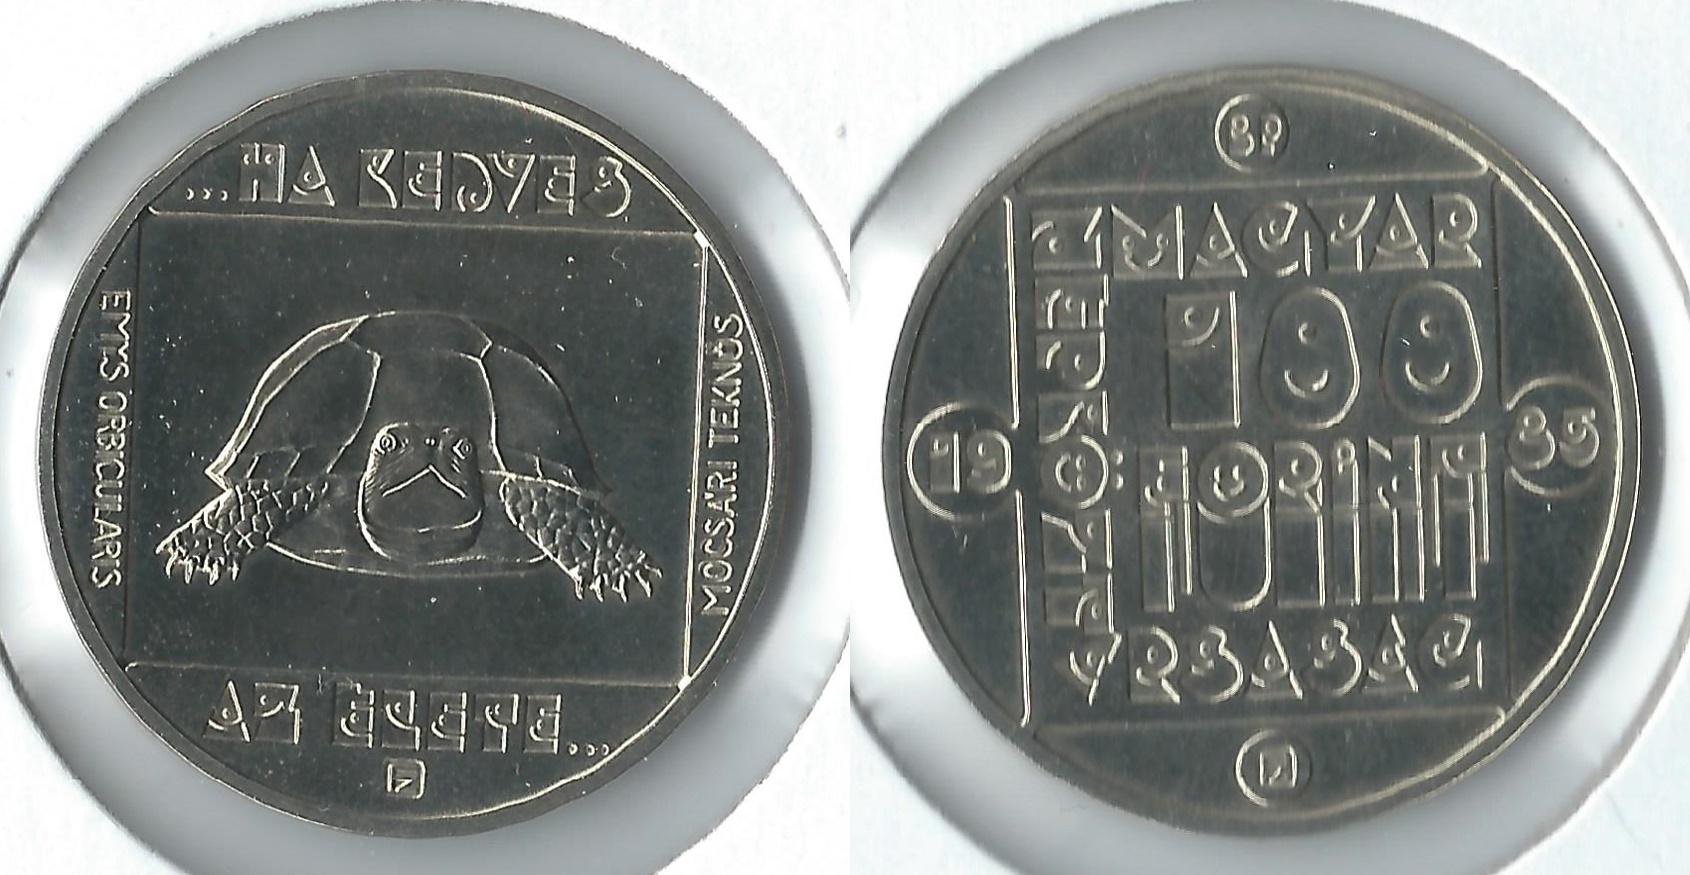 1983 hungary 100 forint.jpg